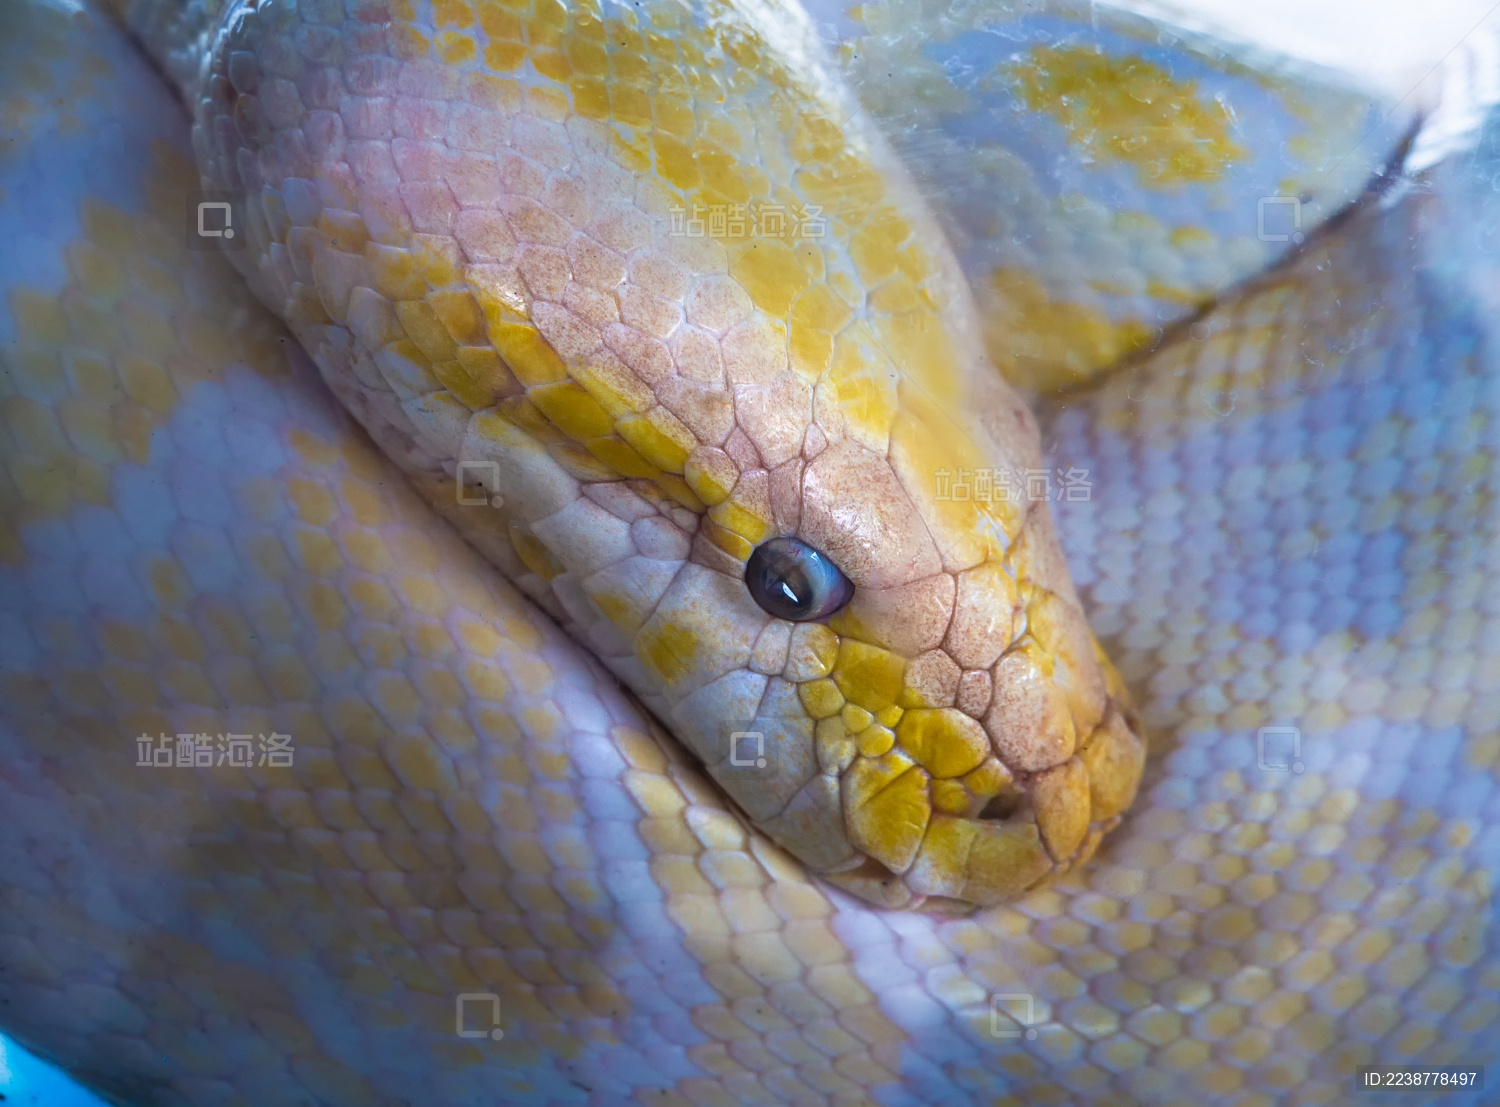 动物园缅甸蟒上午蛇类展览拍摄摄影图配图高清摄影大图-千库网